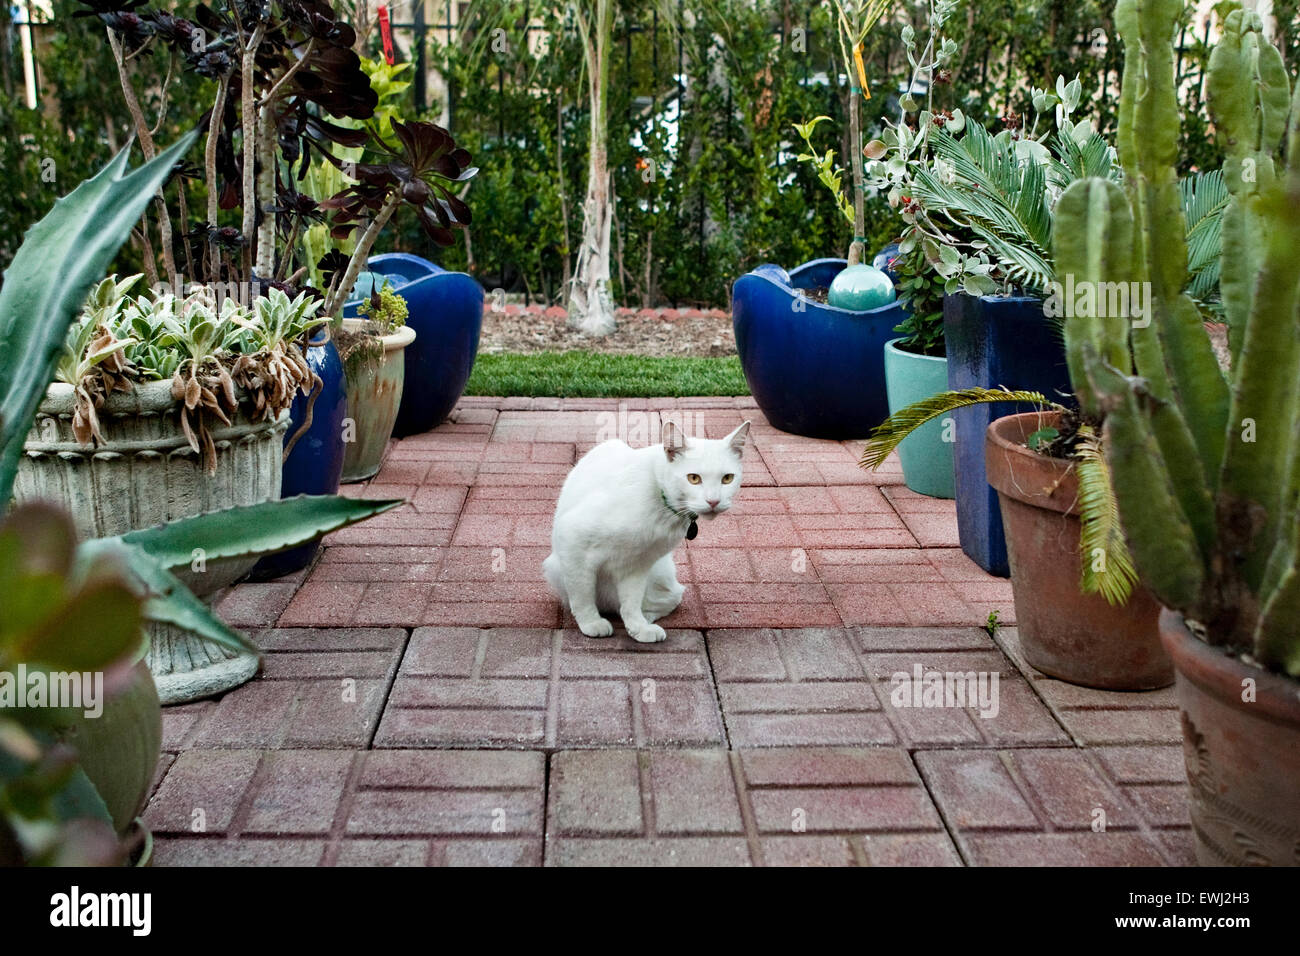 Udienza gatto bianco sul patio in mattoni circondata da piante in vaso nel cortile di casa Foto Stock